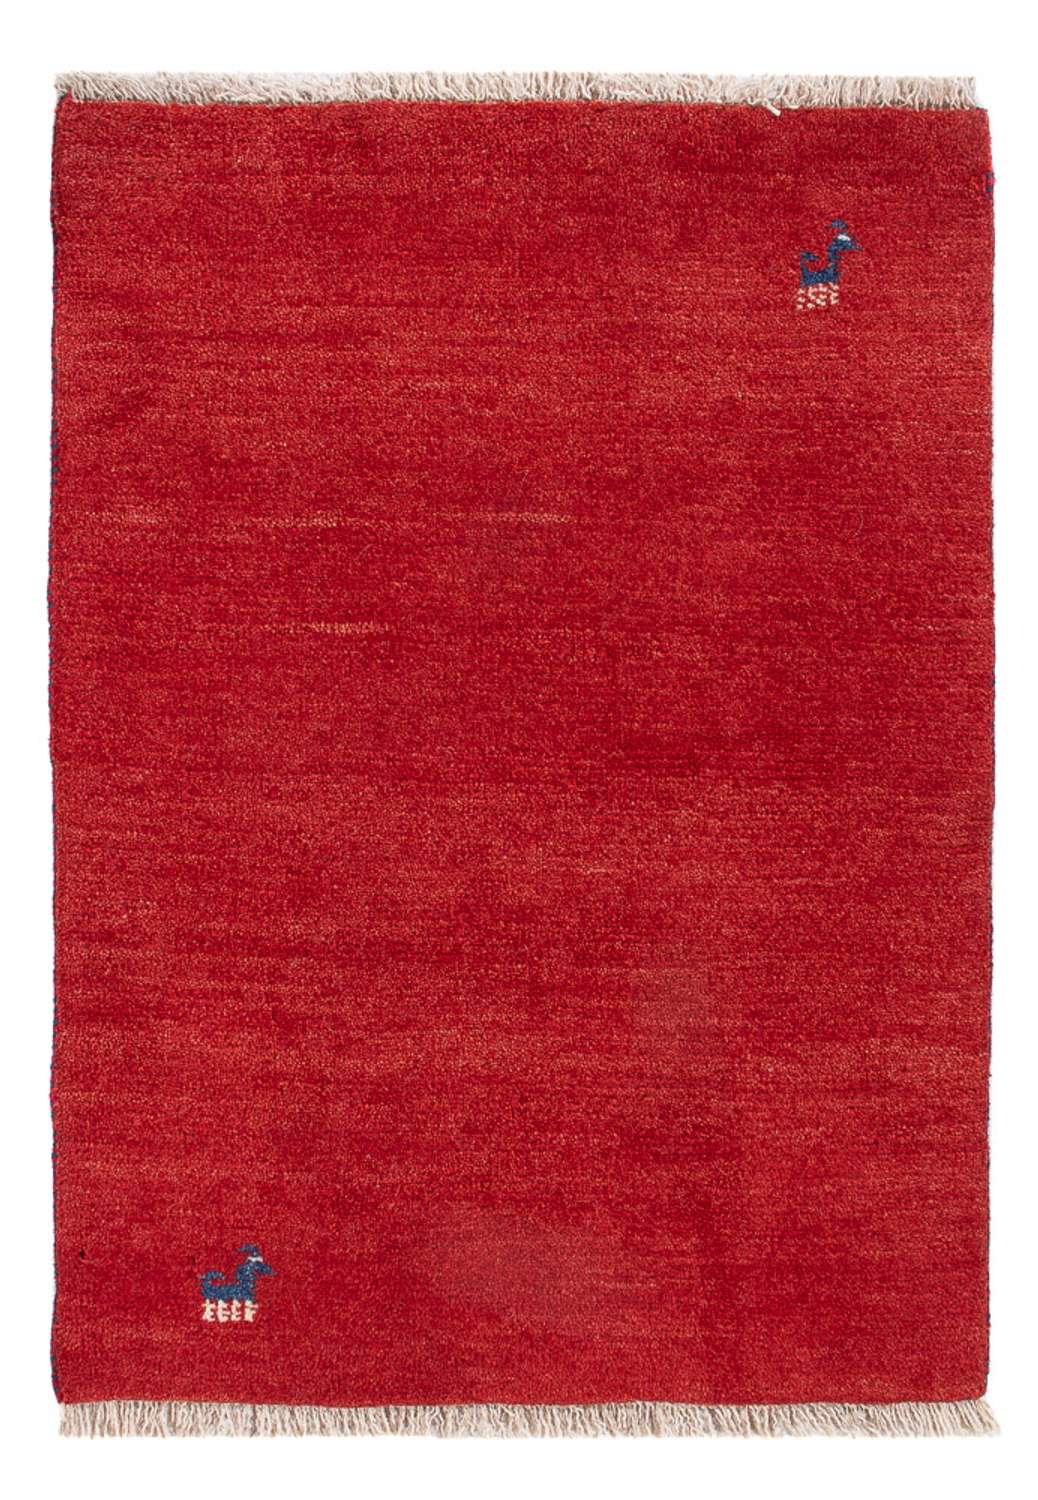 Tappeto Gabbeh - Persero - 84 x 60 cm - rosso